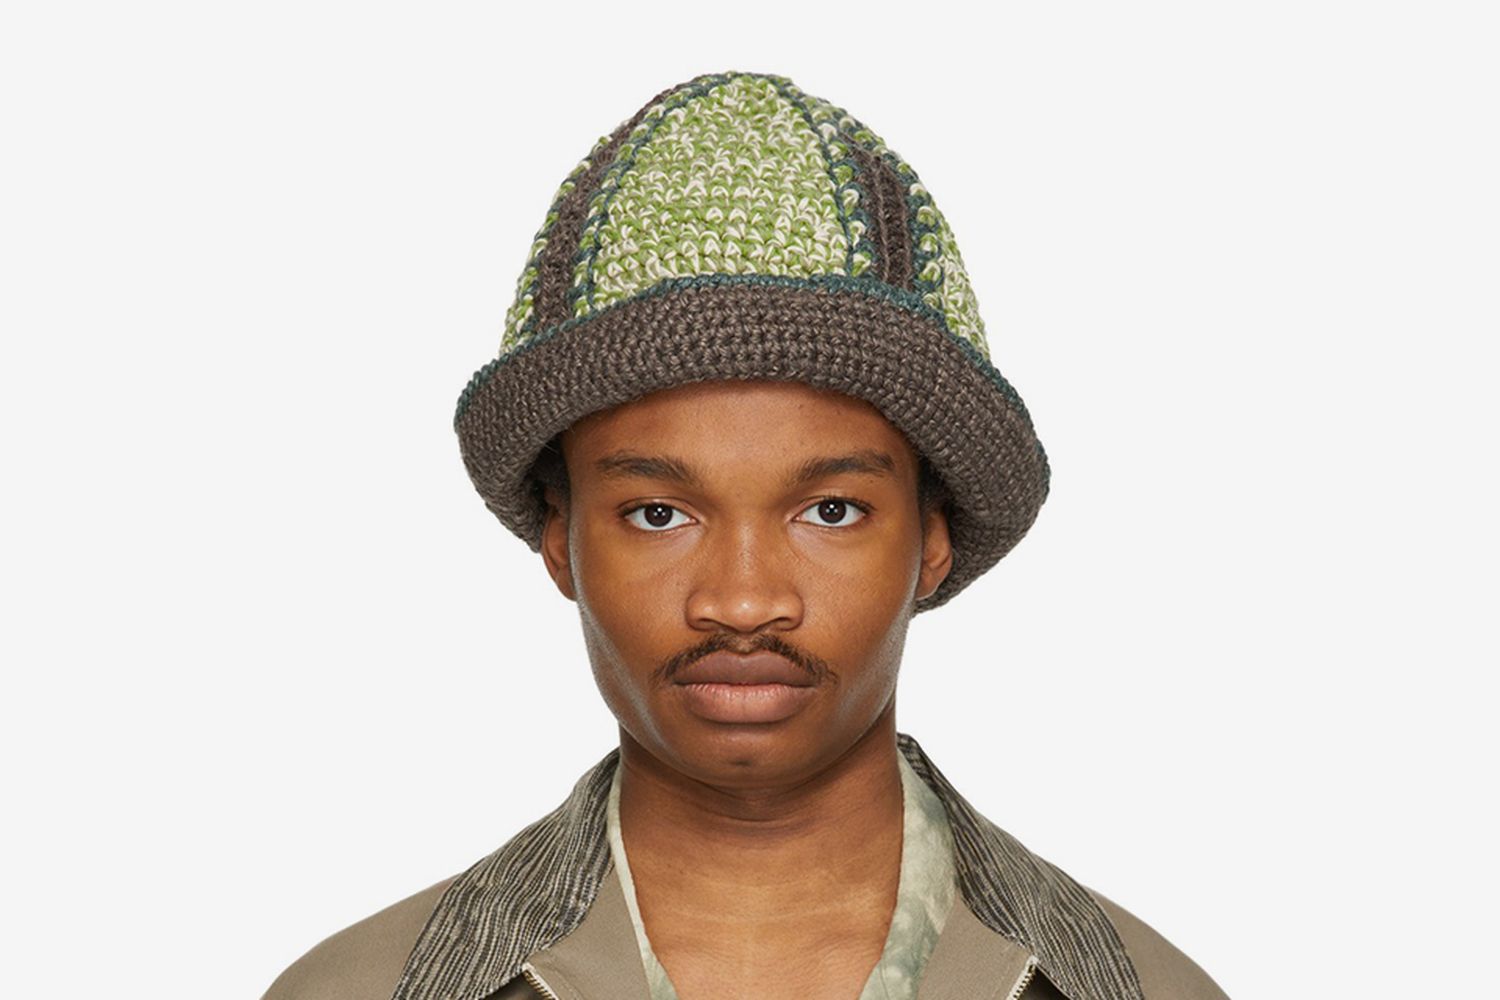 Hand-Crochet Bucket Hat